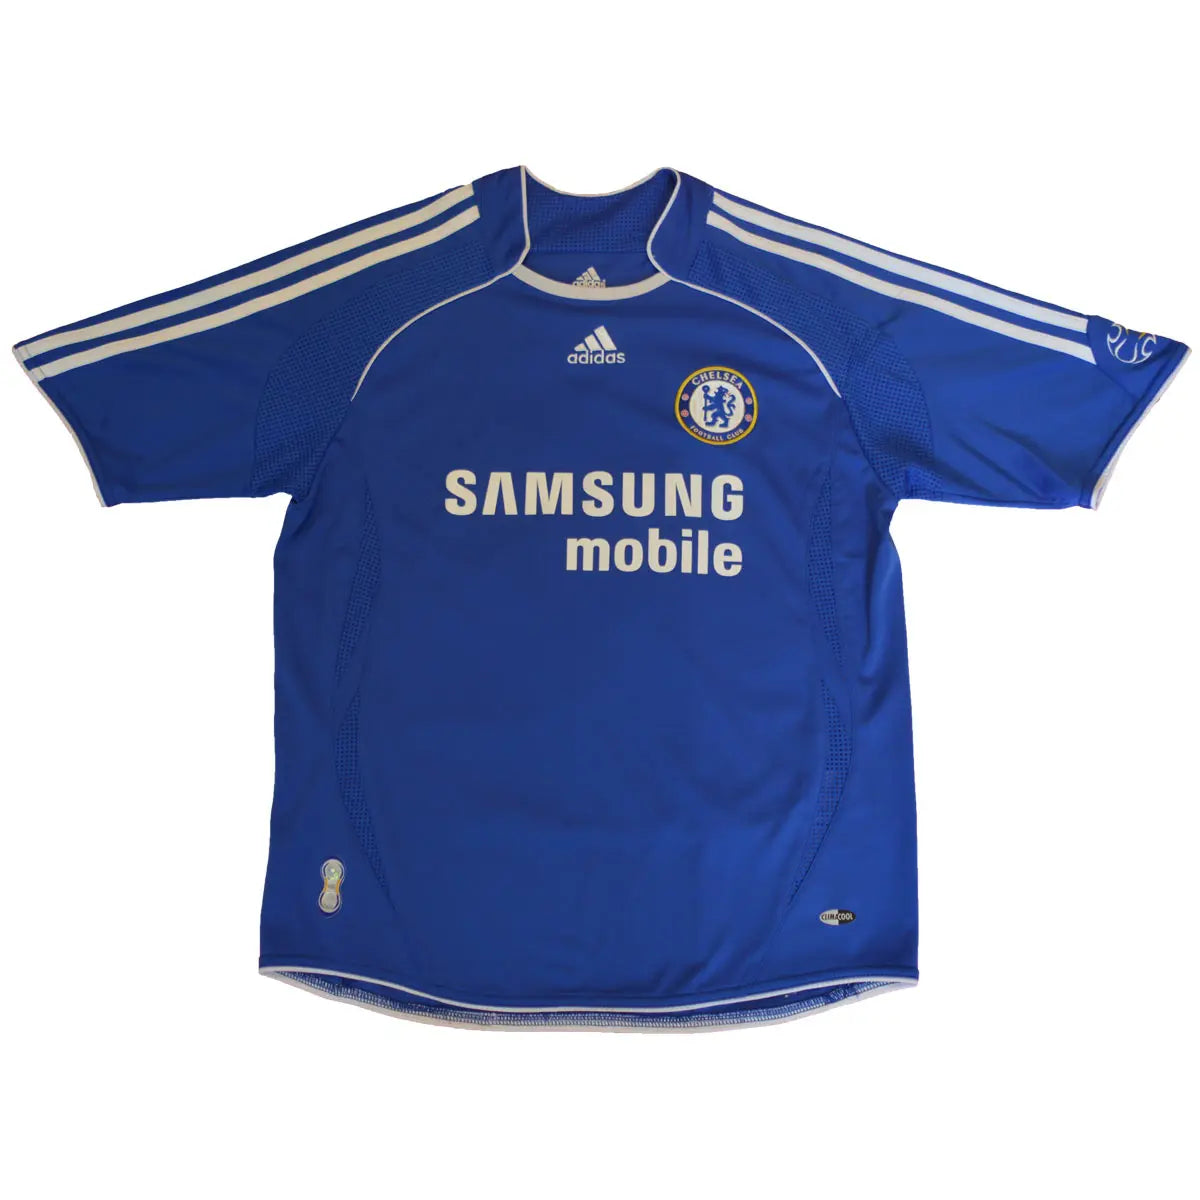 Maillot rétro/vintage authentique bleu domicile de Chelsea lors de la saison 2006-2008 Terry